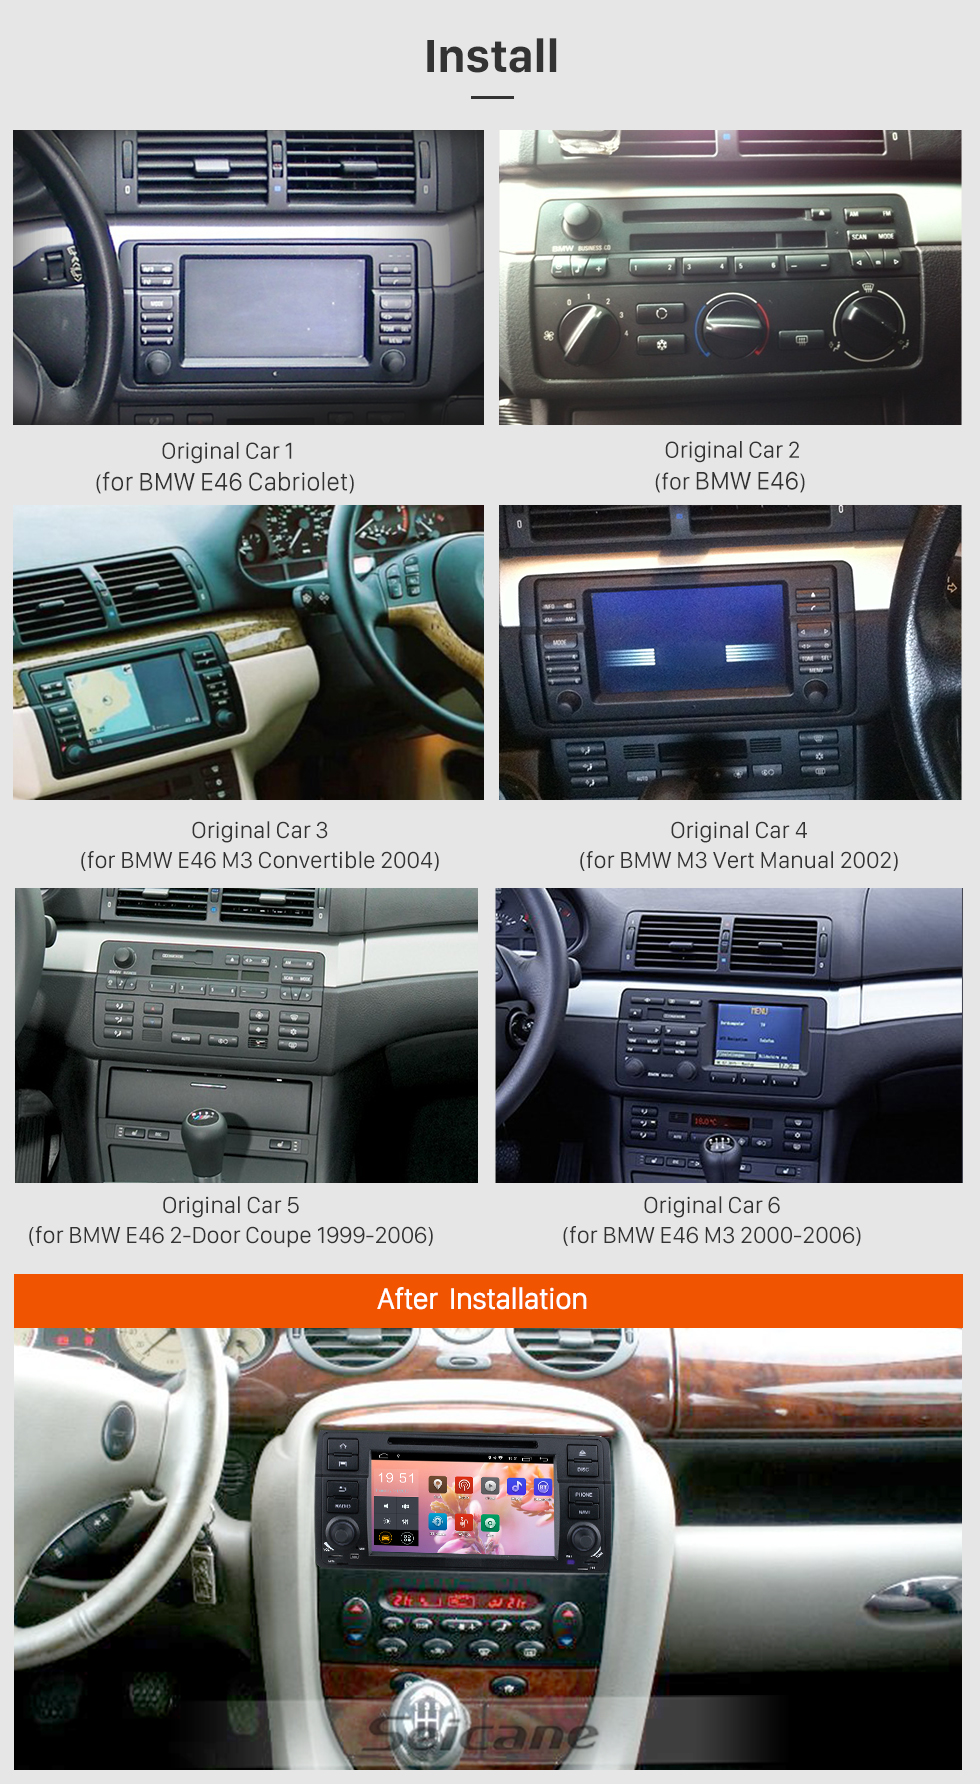 Seicane 7 polegadas Android 9.0 In Dash Radio Para 2000-2006 BMW Série 3 M3 E46 316i Rover 75 MG ZT Navegação GPS Carro DVD Player Sistema de áudio Bluetooth Rádio Música Suporte de espelho Link de espelho 3G WiFi DAB +